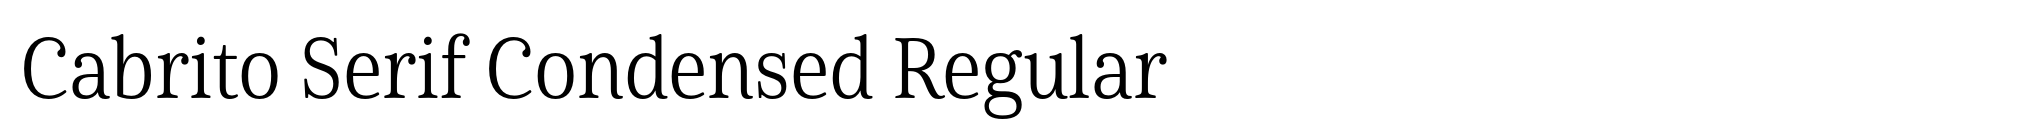 Cabrito Serif Condensed Regular image